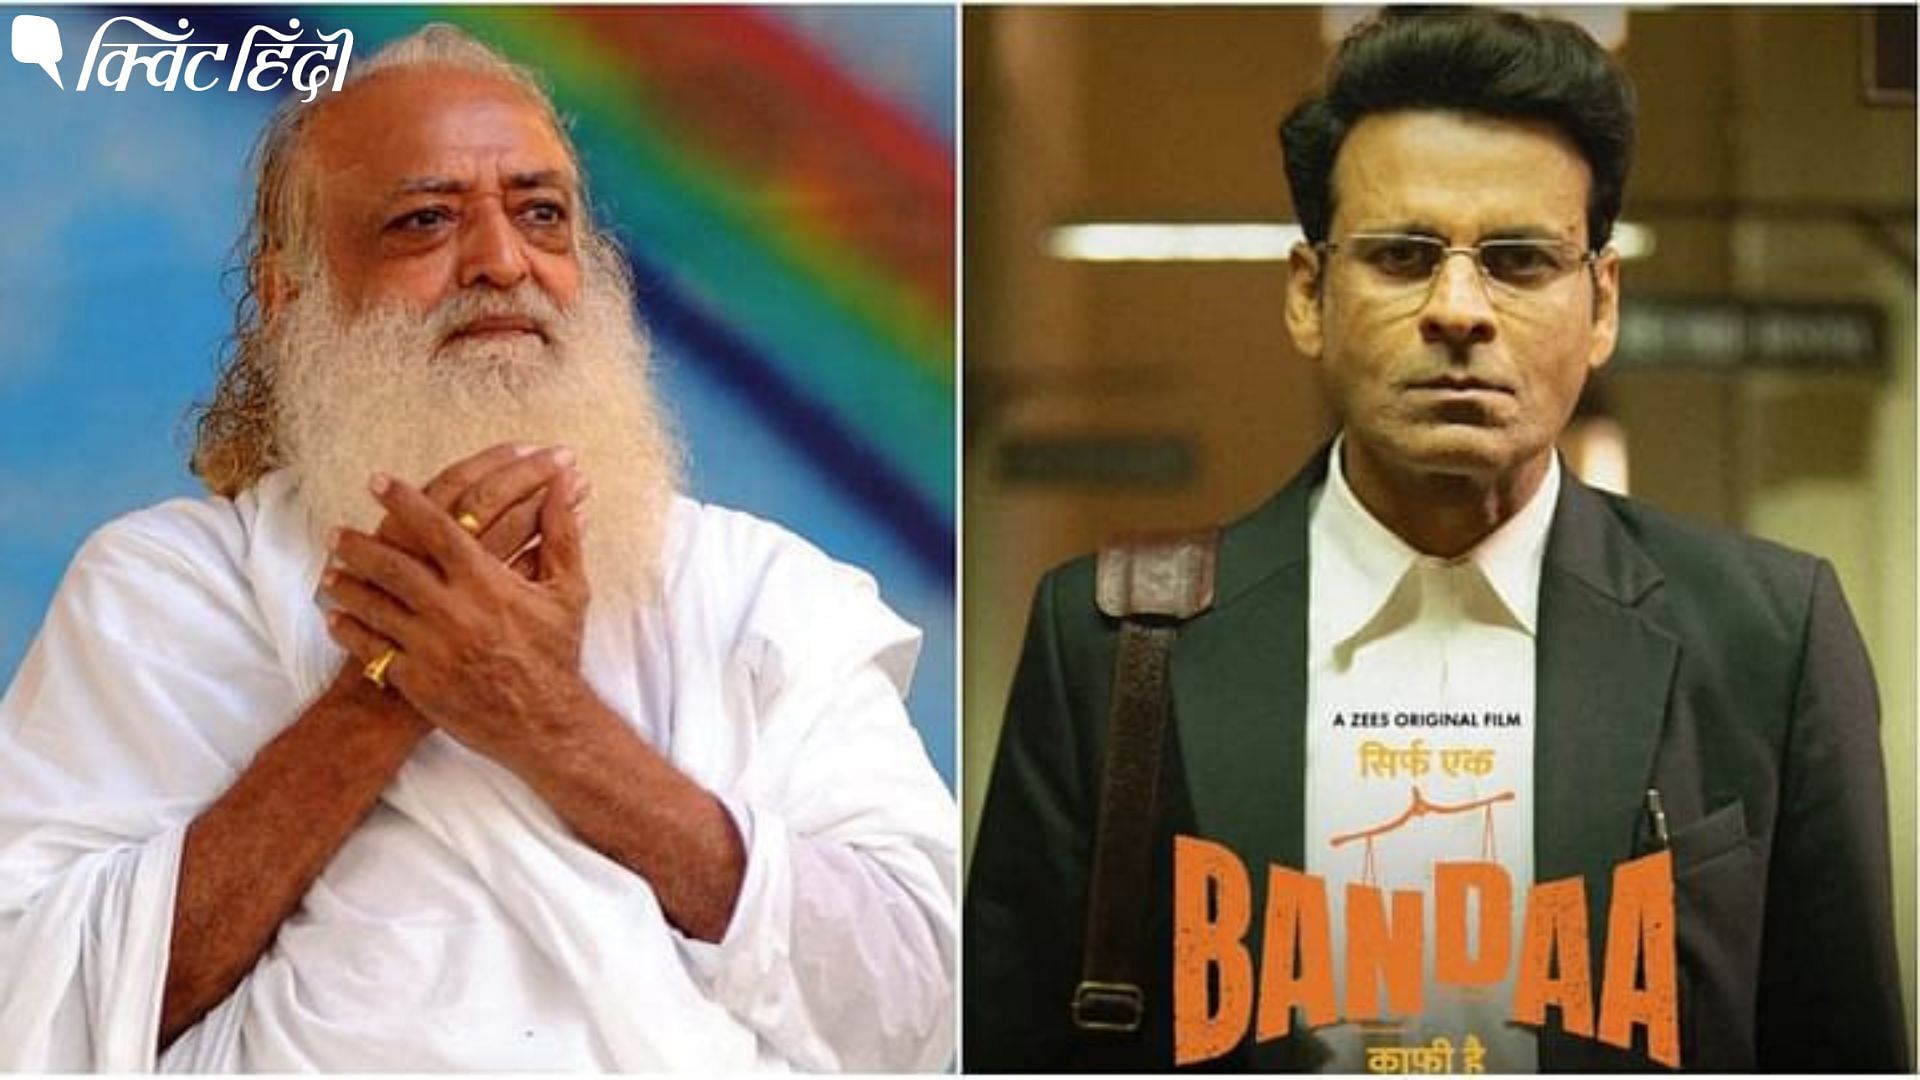 <div class="paragraphs"><p>Manoj Bajpayee film Sirf Ek Bandaa Kaafi Hai Gets Legal Notice From Asaram Bapu</p></div>